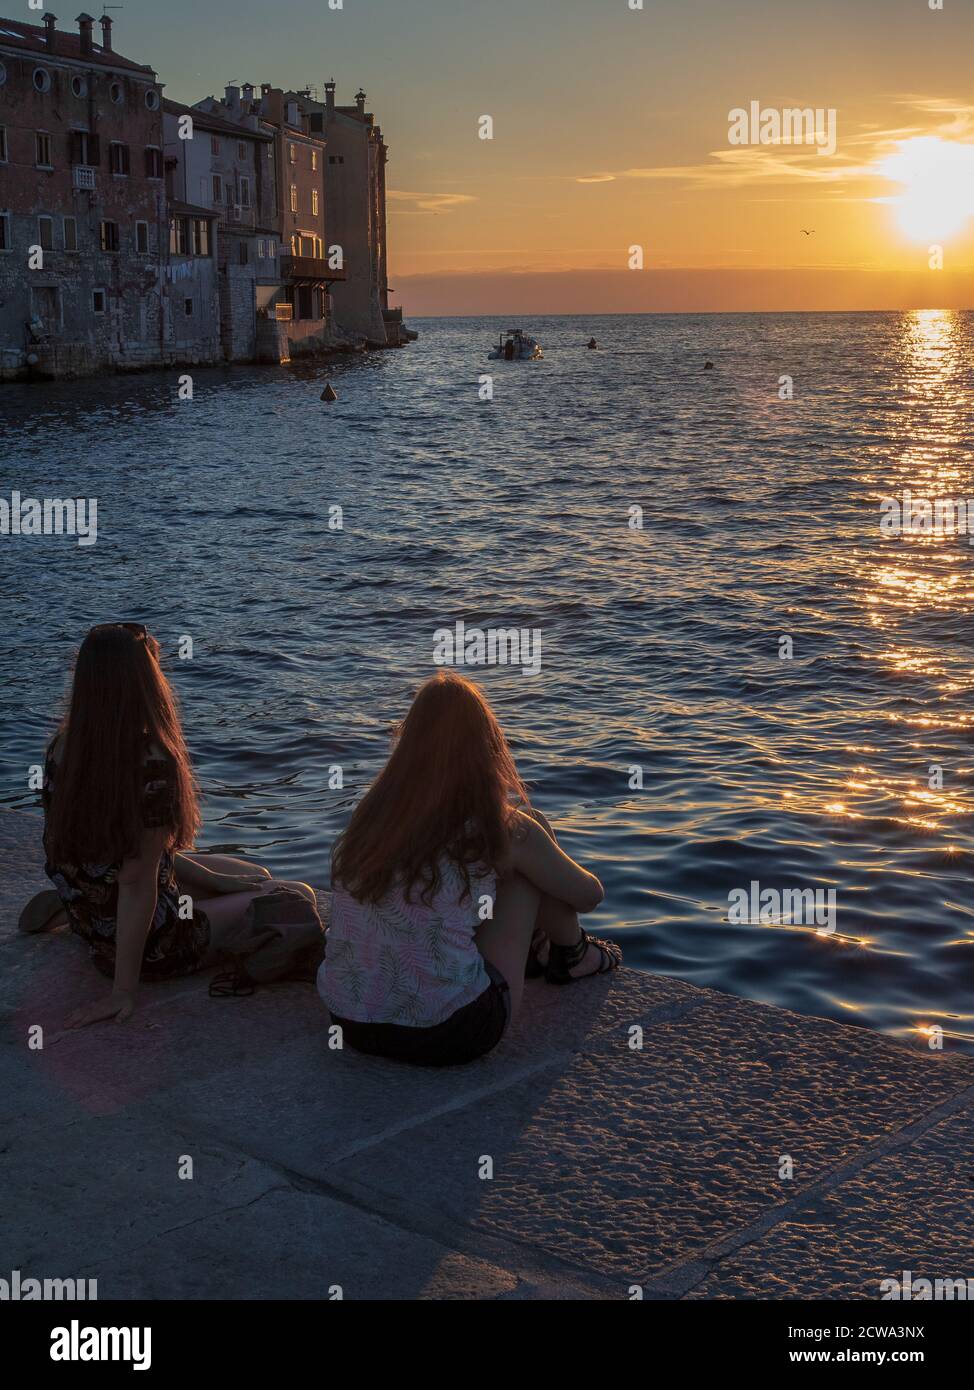 ROVINJ, KROATIEN - 06/23/2018: Zwei junge Frauen mit langen Haaren sitzen in der Nähe des Meeres und beobachten den Sonnenuntergang. Stockfoto